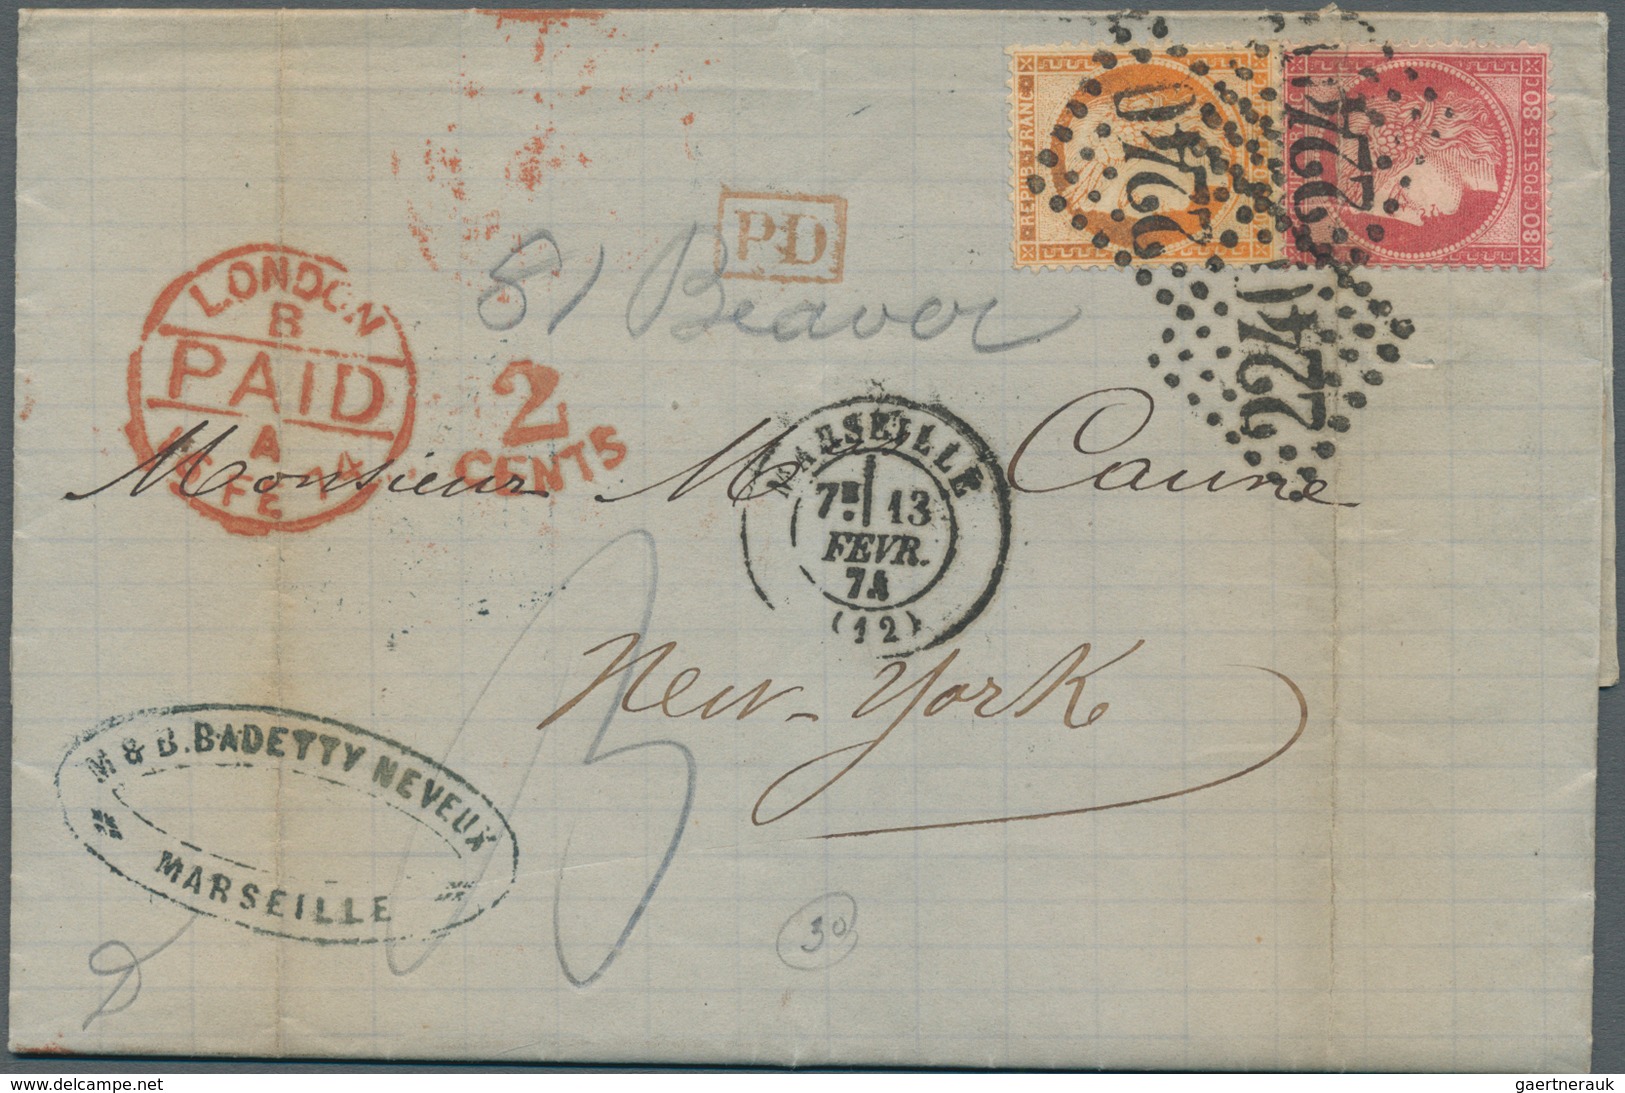 13566 Frankreich: 1852-1874, Four entire letters including 1852 letter Lyon-St. Etienne, 1854 (Paris) and